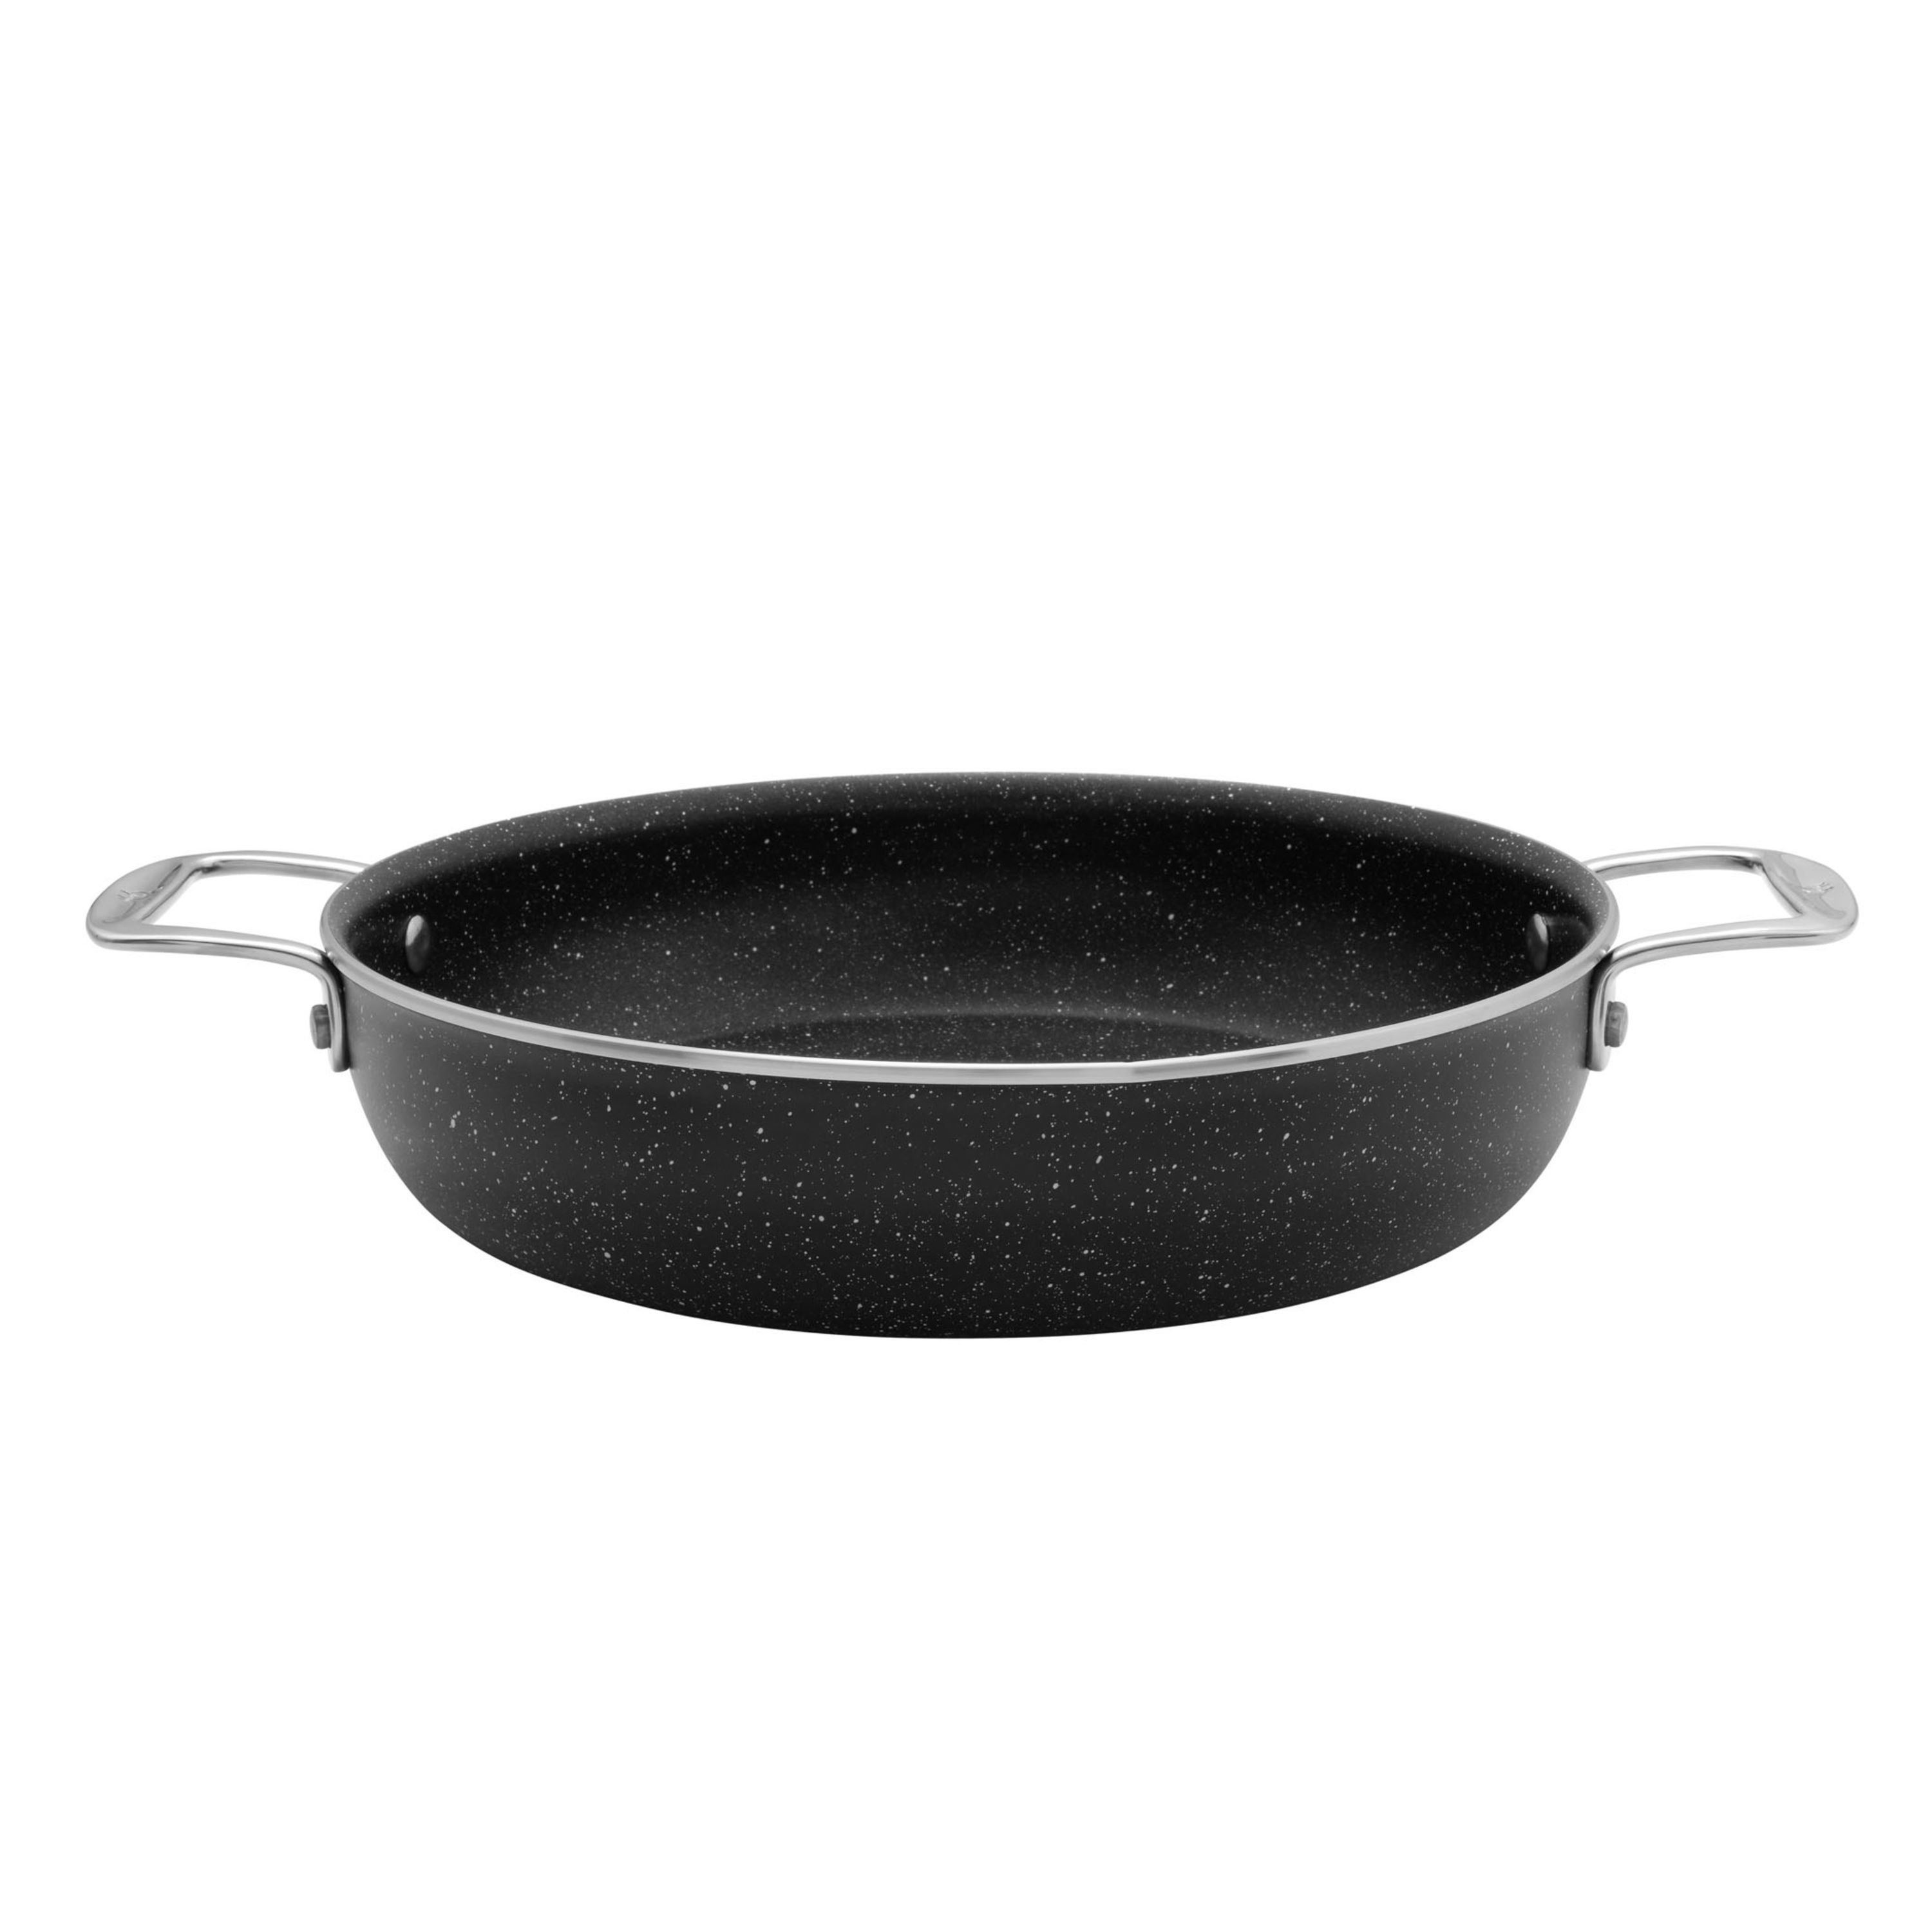 Henckels Capri 10-Piece Non Stick Granitium Cookware Set ,Black